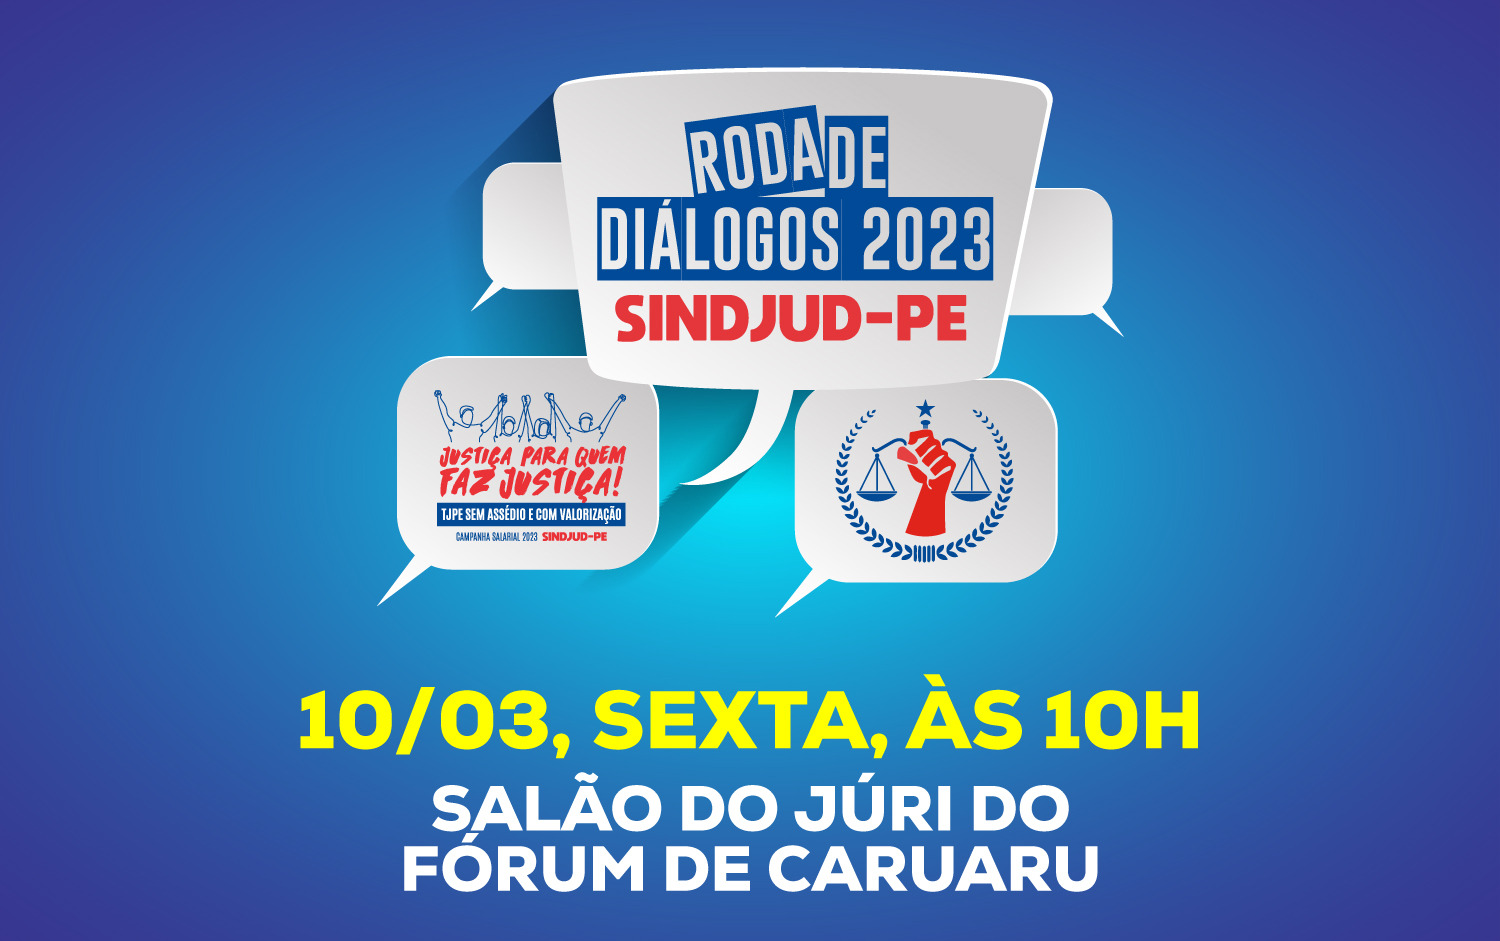 #PraCegoVer Arte gráfica detalha informações sobre a Roda de Diálogos do SINDJUD-PE que acontece no dia 10 de março de 2023, às 10h, no Salão do Júri do Fórum de Caruaru, no Agreste de Pernambuco.